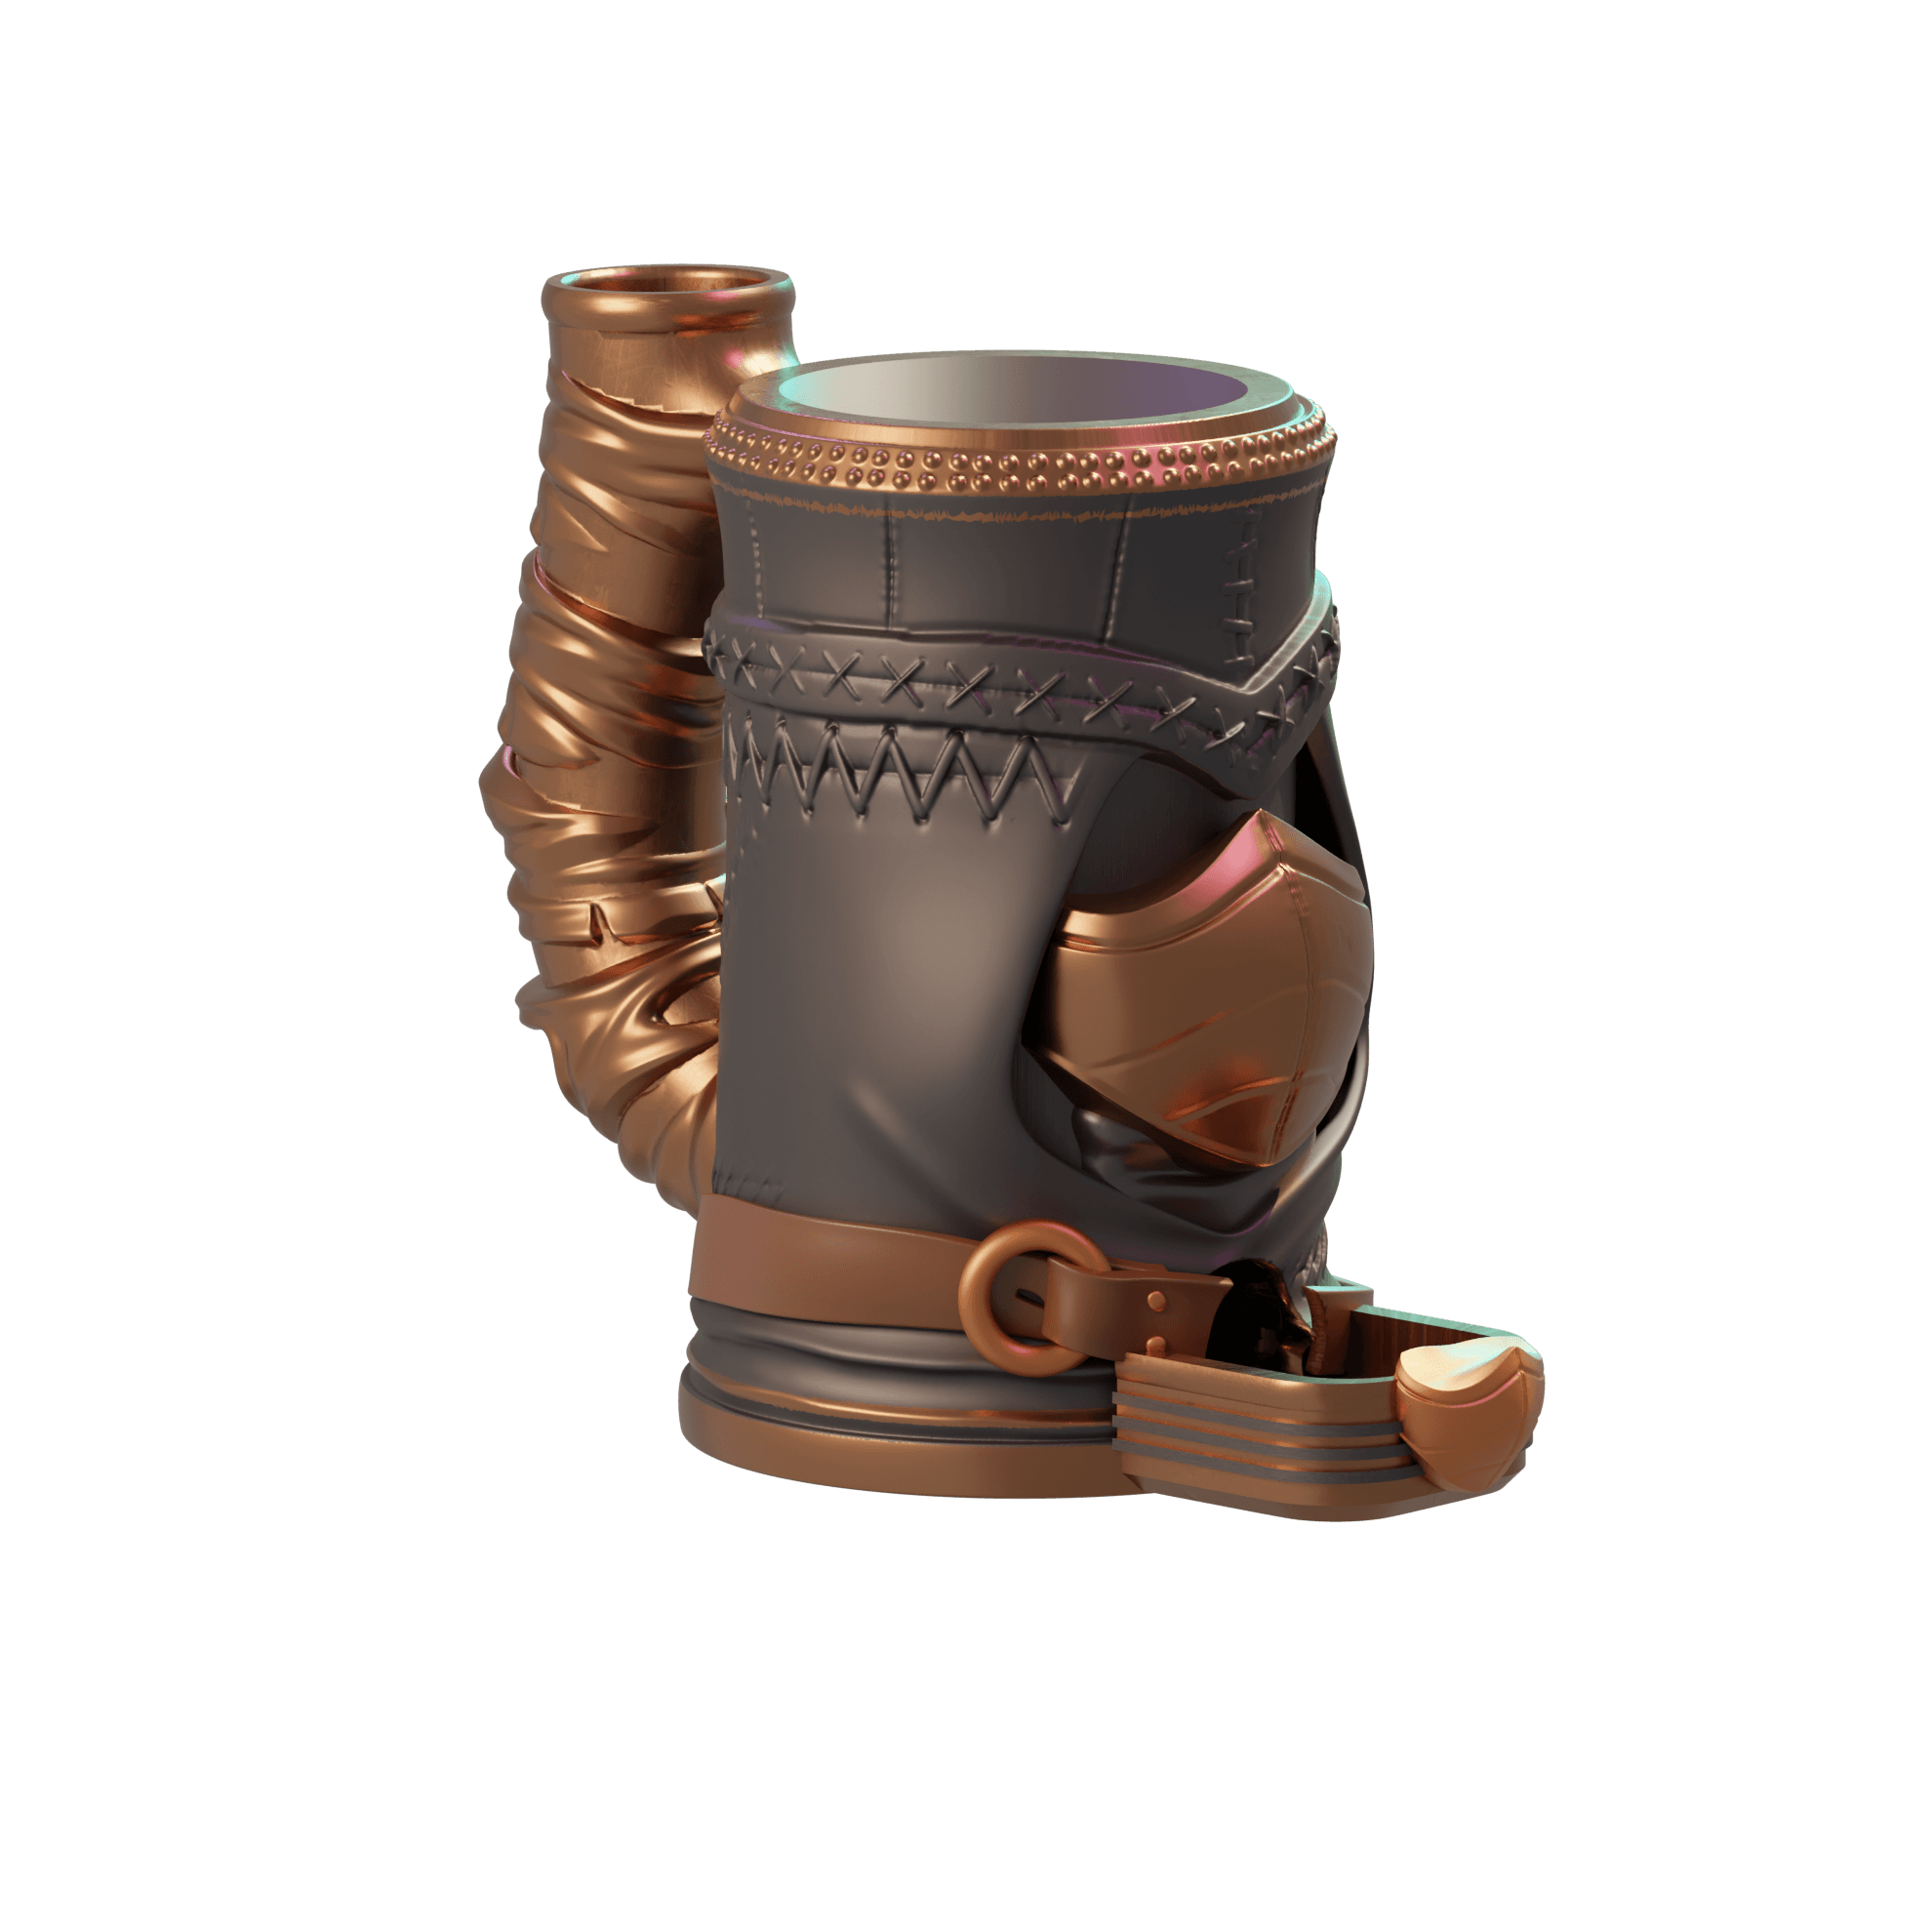 Assassin Dice Tower Mug 3d model